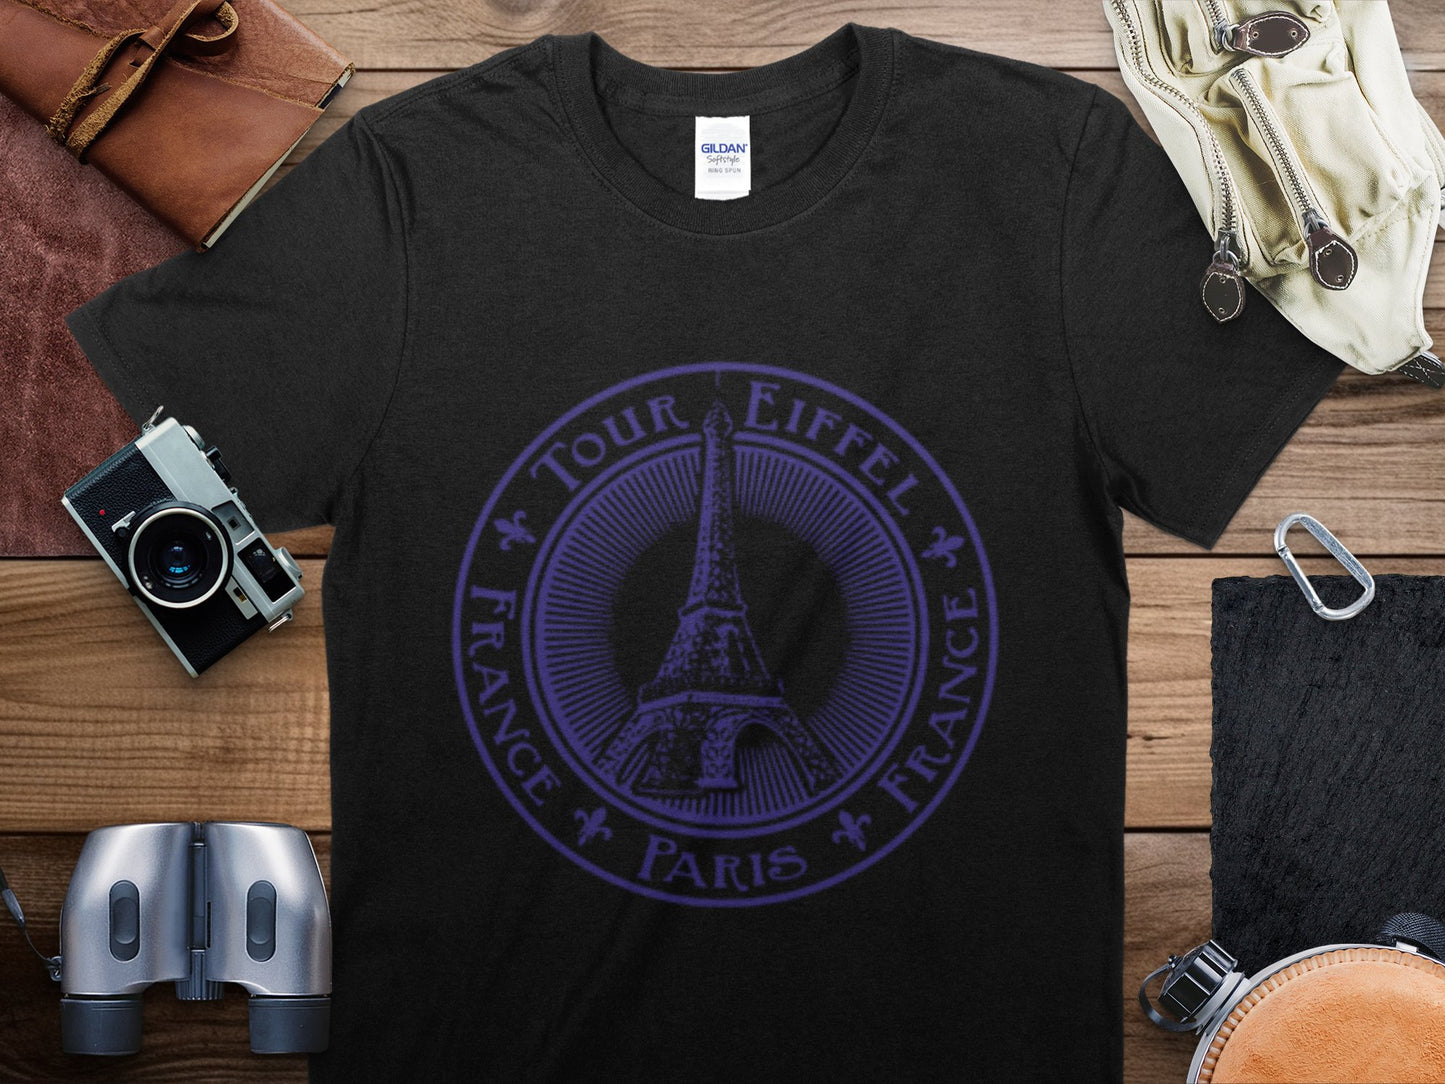 France Paris 2 Stamp Travel T-Shirt, France Paris 2 Travel Shirt